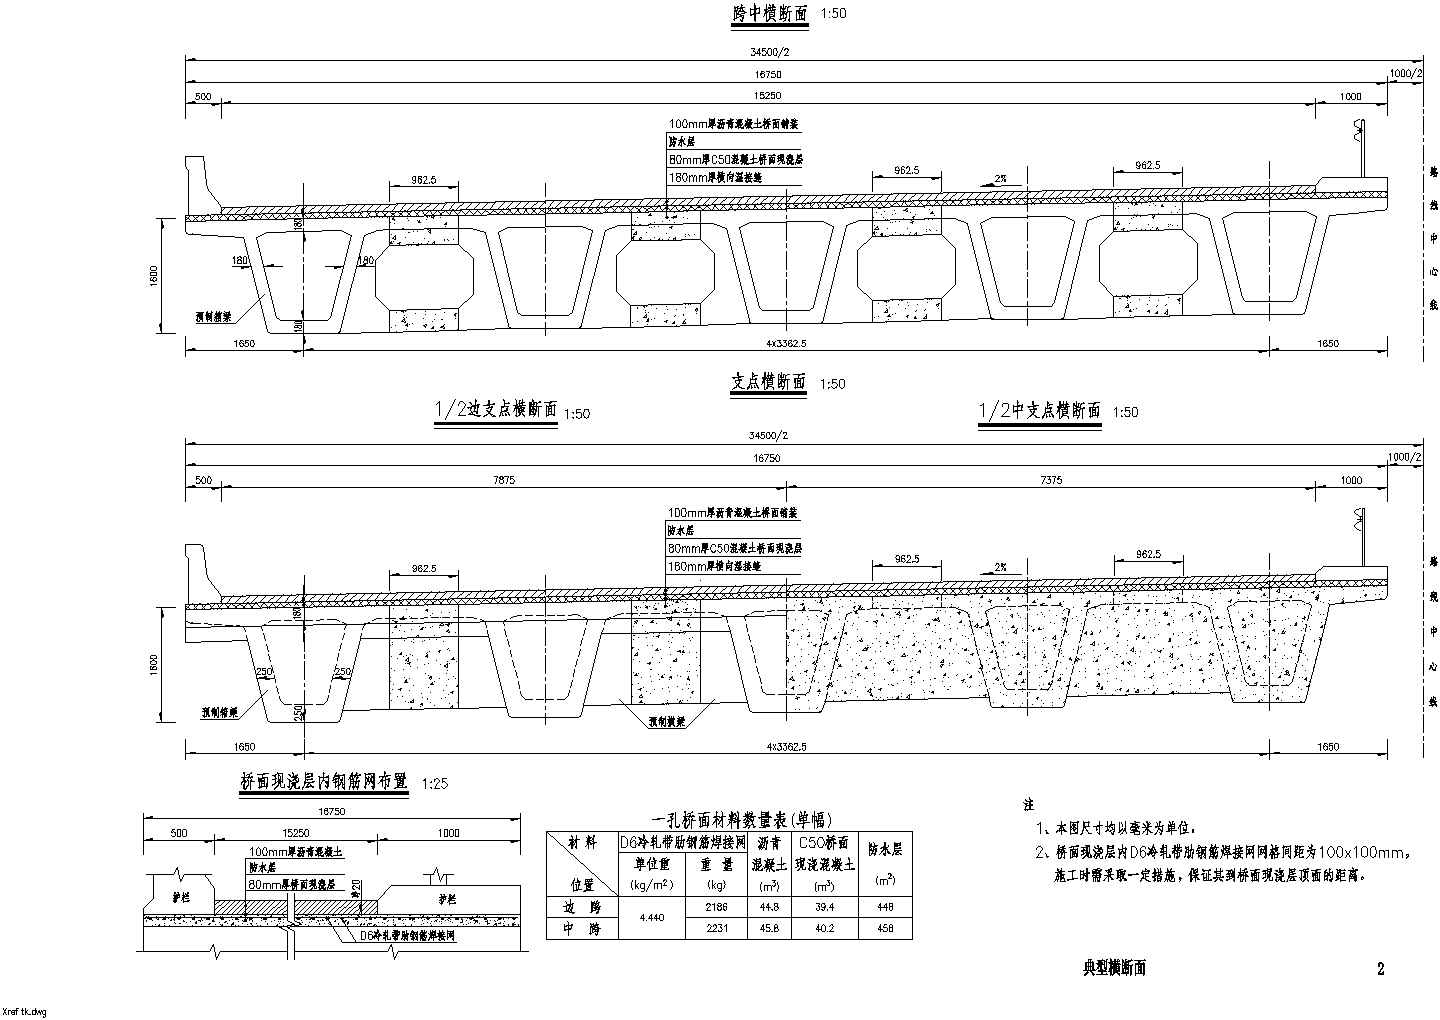 某道路工程装配式预应力混凝土箱形连续梁桥上部构造施工图